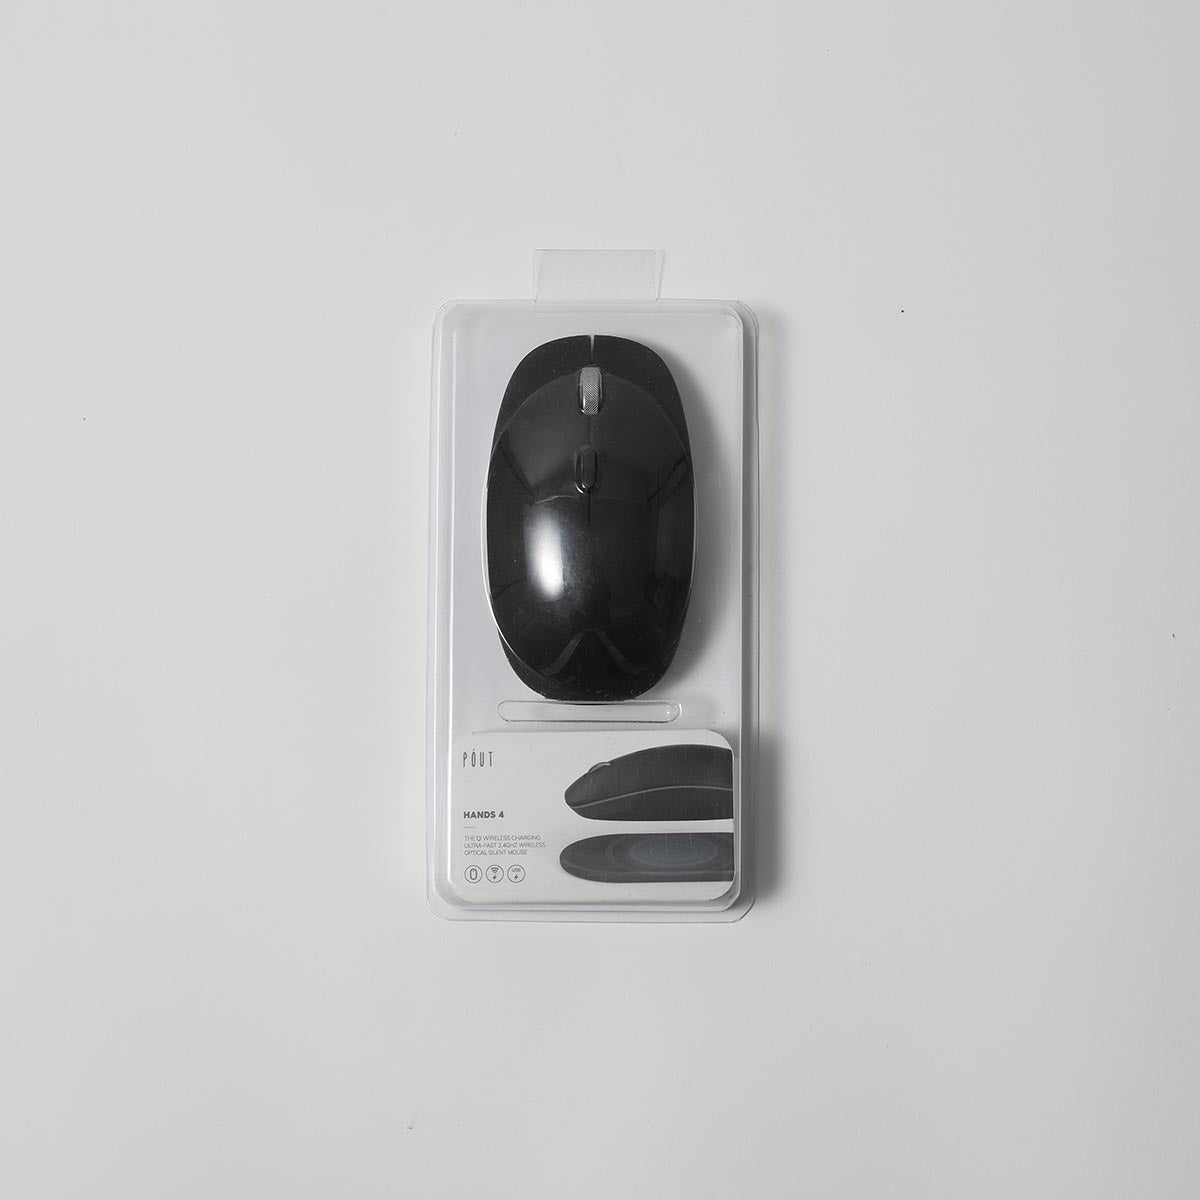 POUT HANDS 4 Qi 無線充電 2.4Ghz 滑鼠（黑色 / 白色）